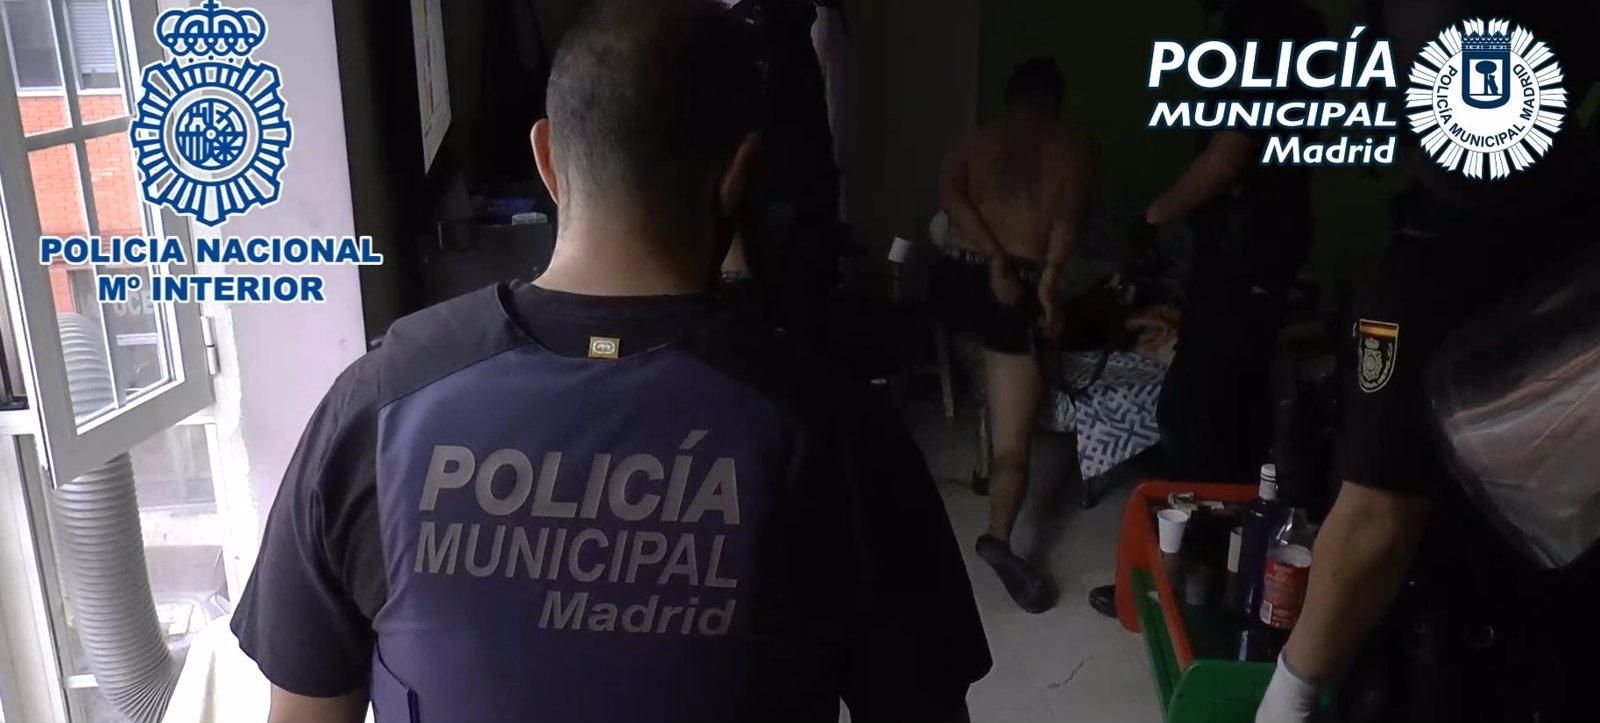 La Policía Municipal de Madrid ha intervenido desde 2020 en 256 narcopisos y narcochabolas, con más de mil detenidos